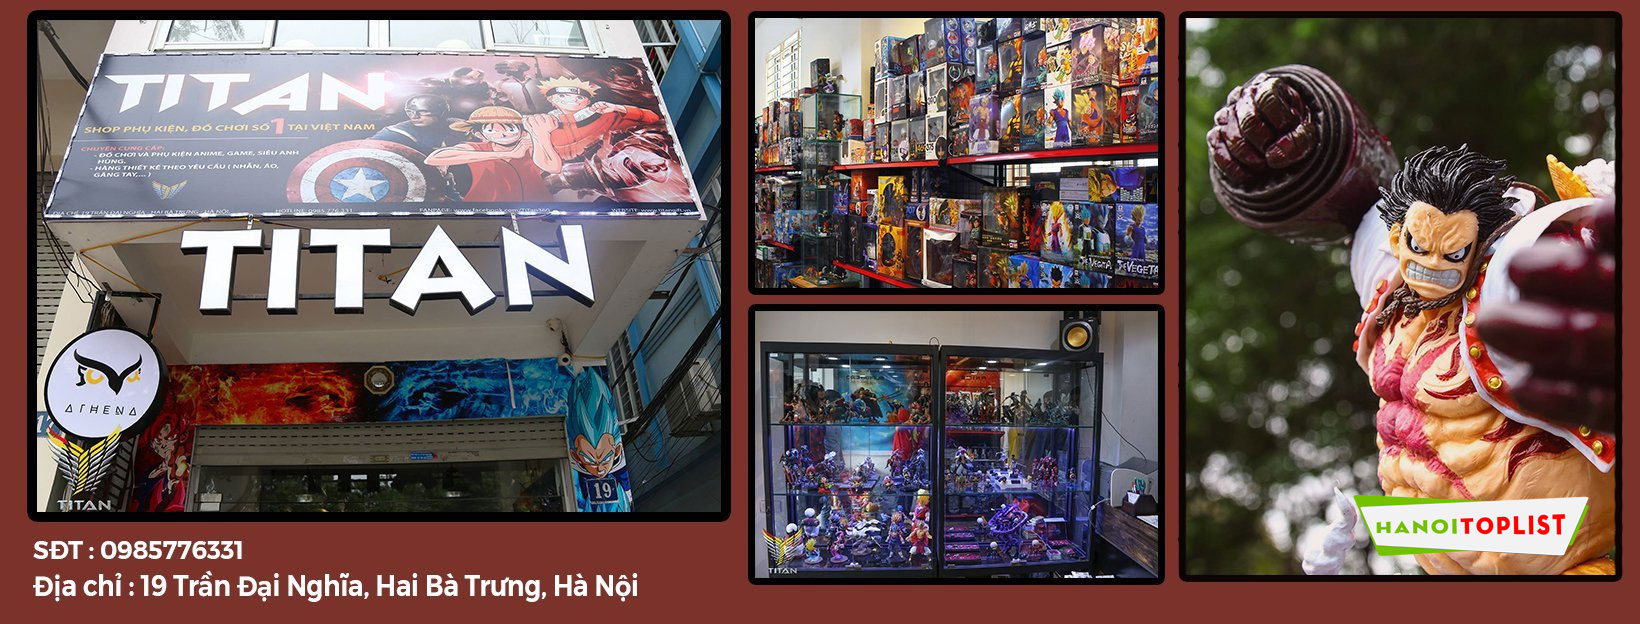 Các shop anime ở Hà Nội đồ chơi mô hình siêu chất 